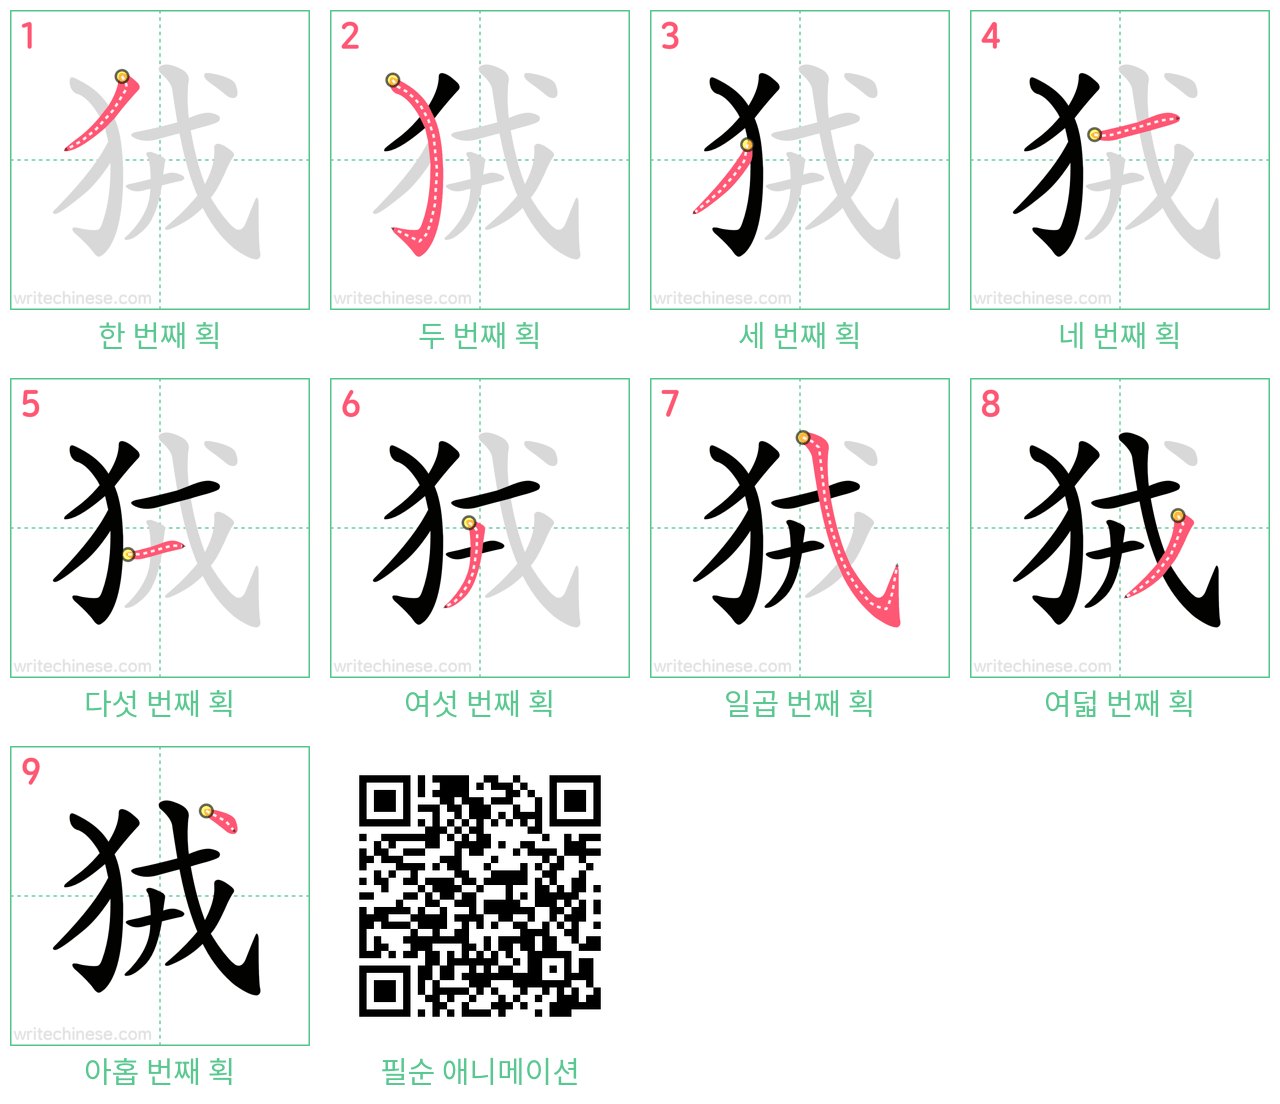 狨 step-by-step stroke order diagrams